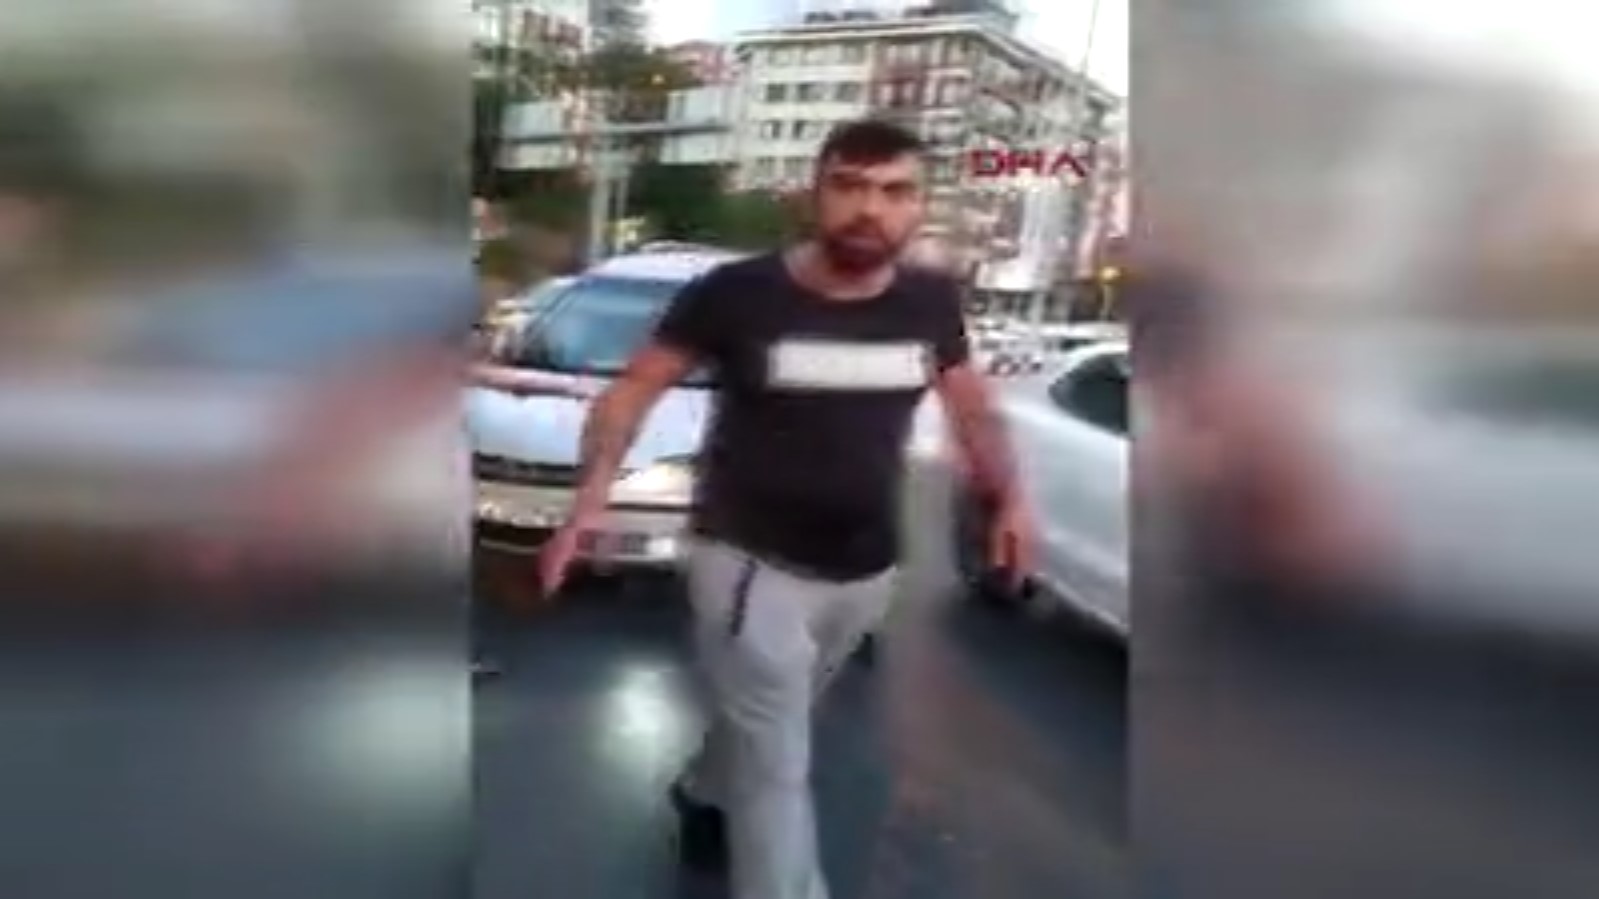 Alibeyköy de bir kişi trafikte kadına saldırdı #1